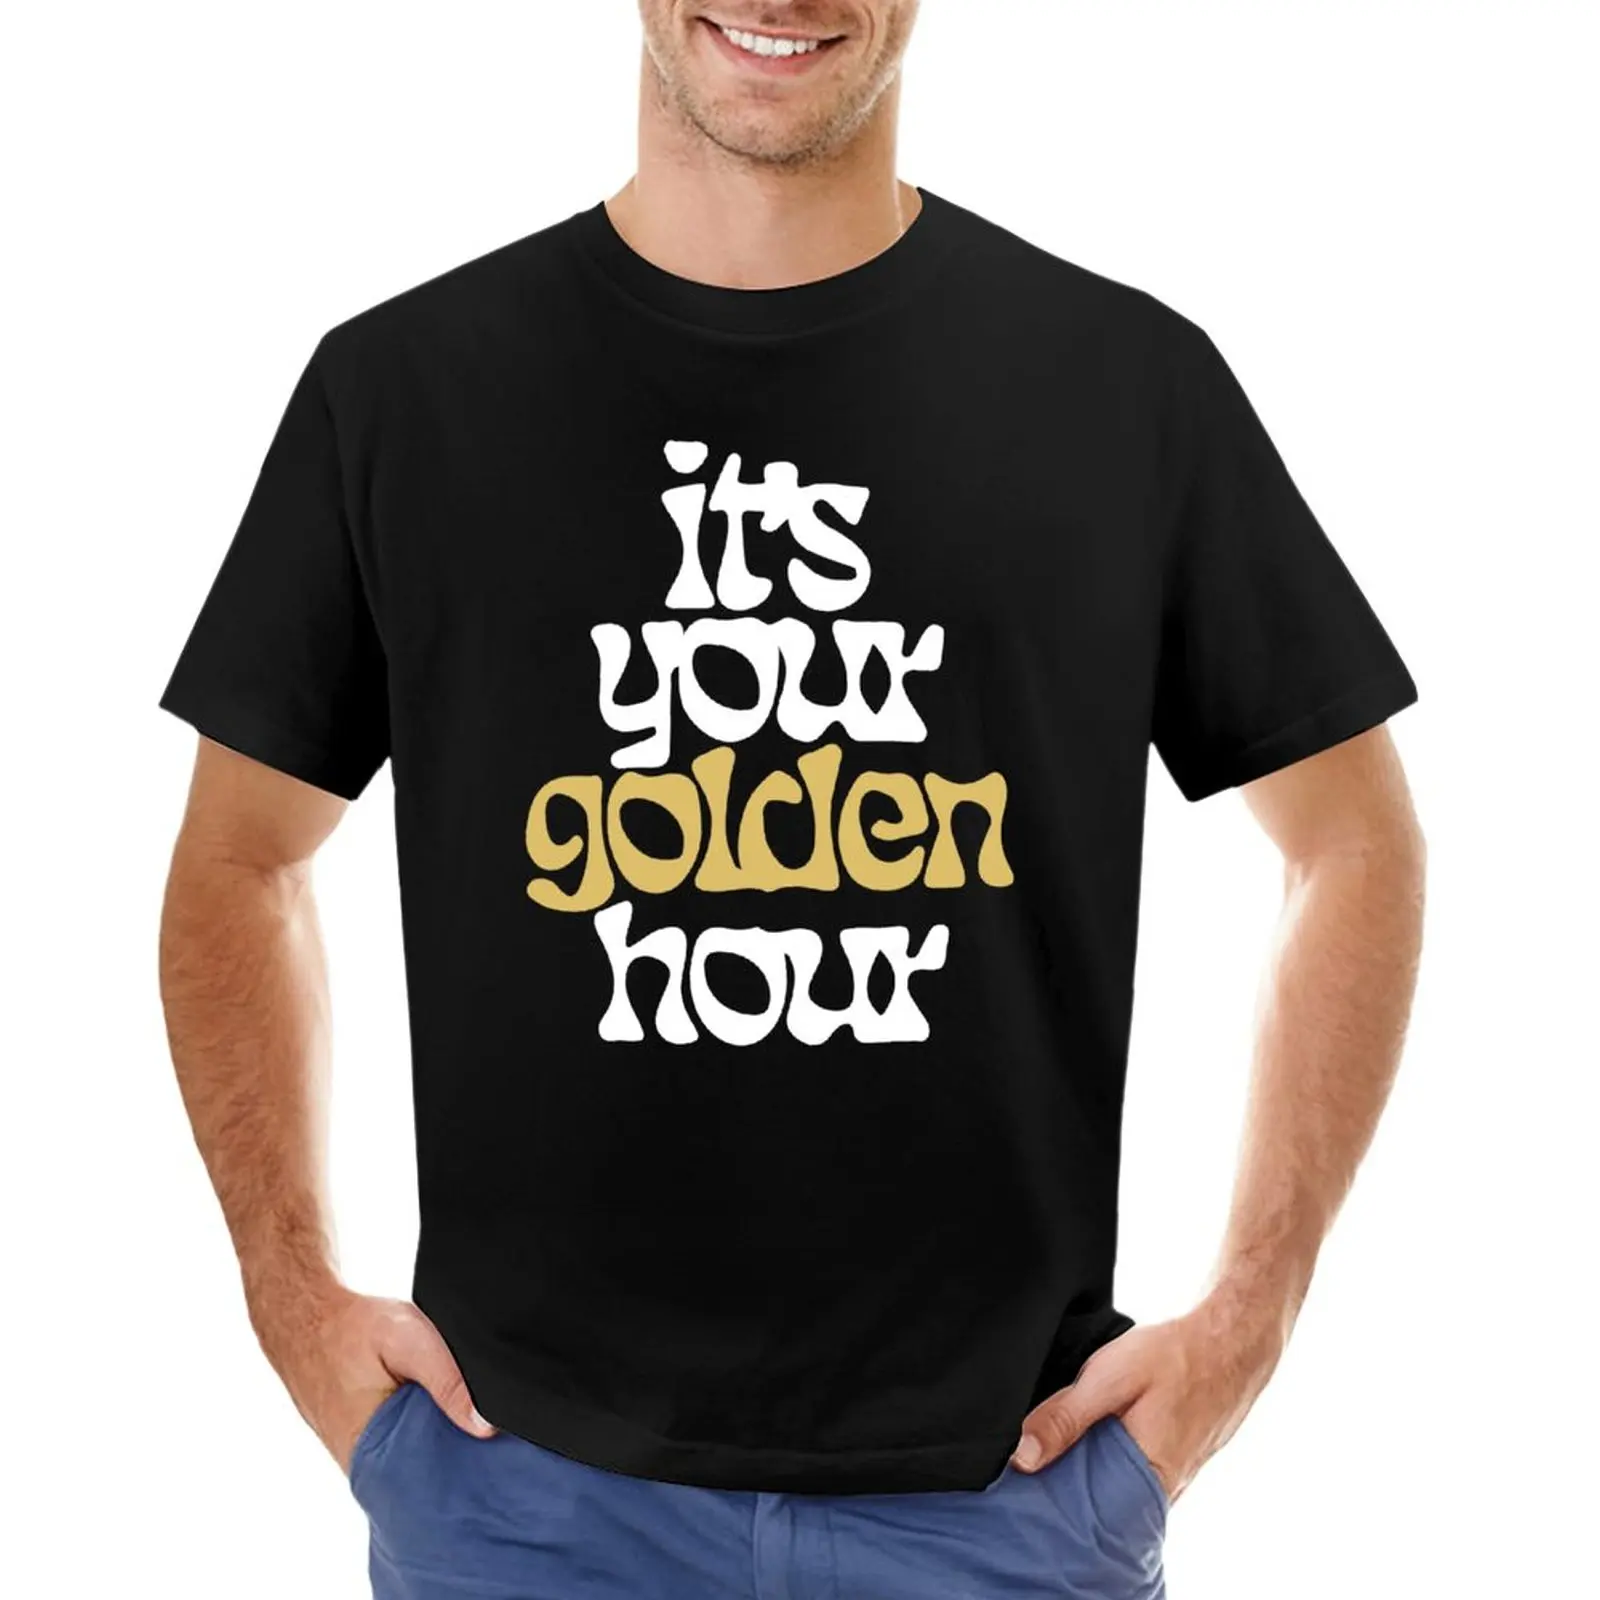 

Golden hour jvke merch -its your golden hourjvke concert -jvke show - jvke shorts T-Shirt oversized t shirt mens funny t shirts